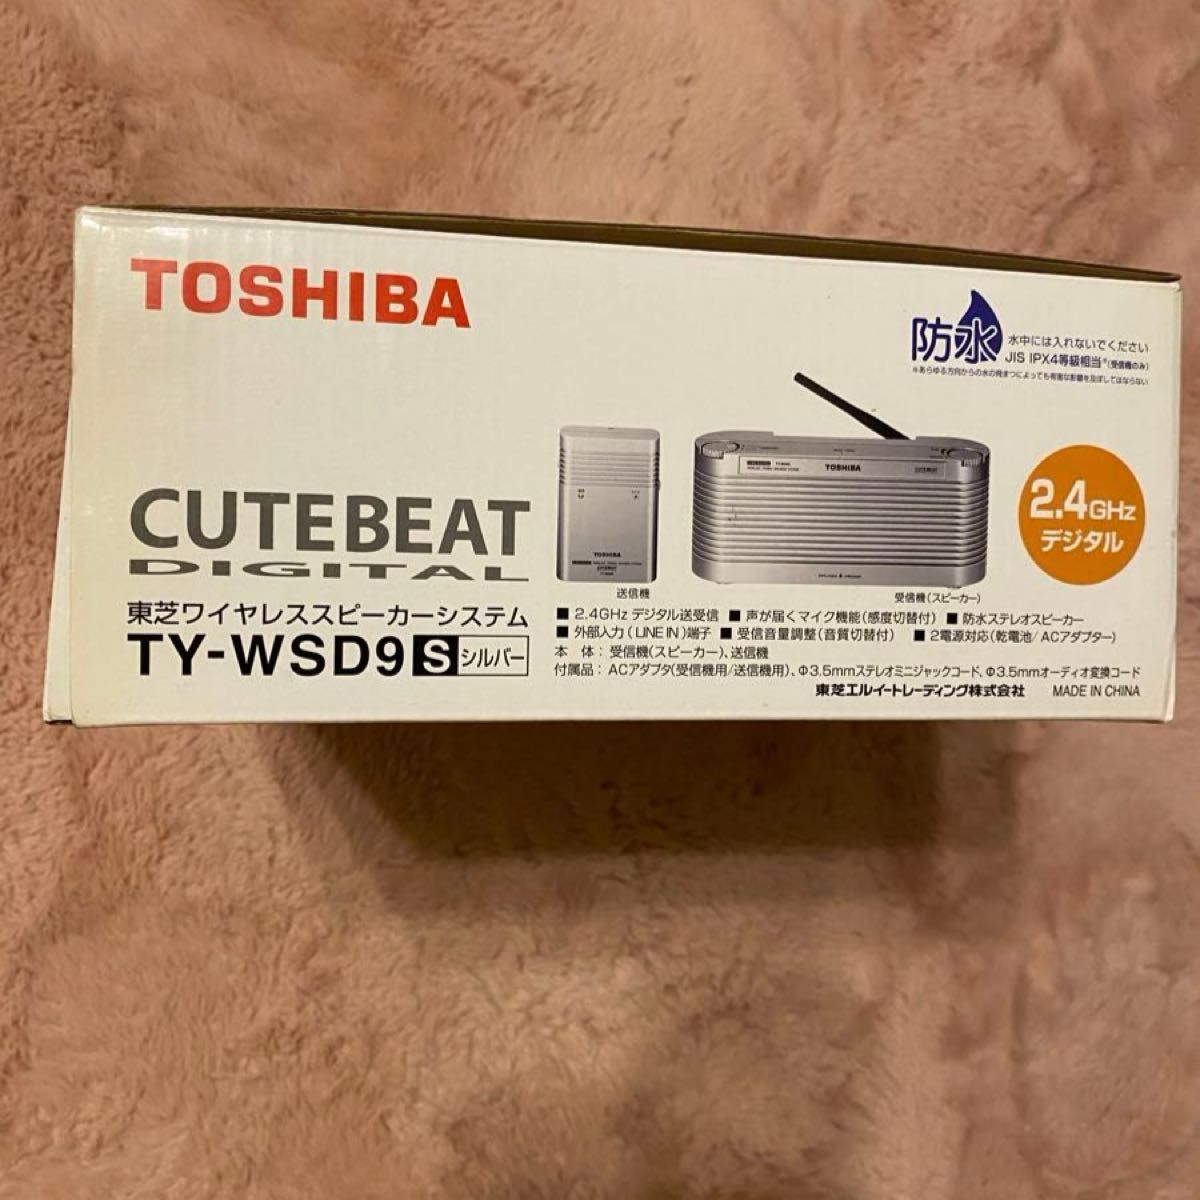 TOSHIBA ワイヤレススピーカーシステムCUTEBEAT TY-WSD9